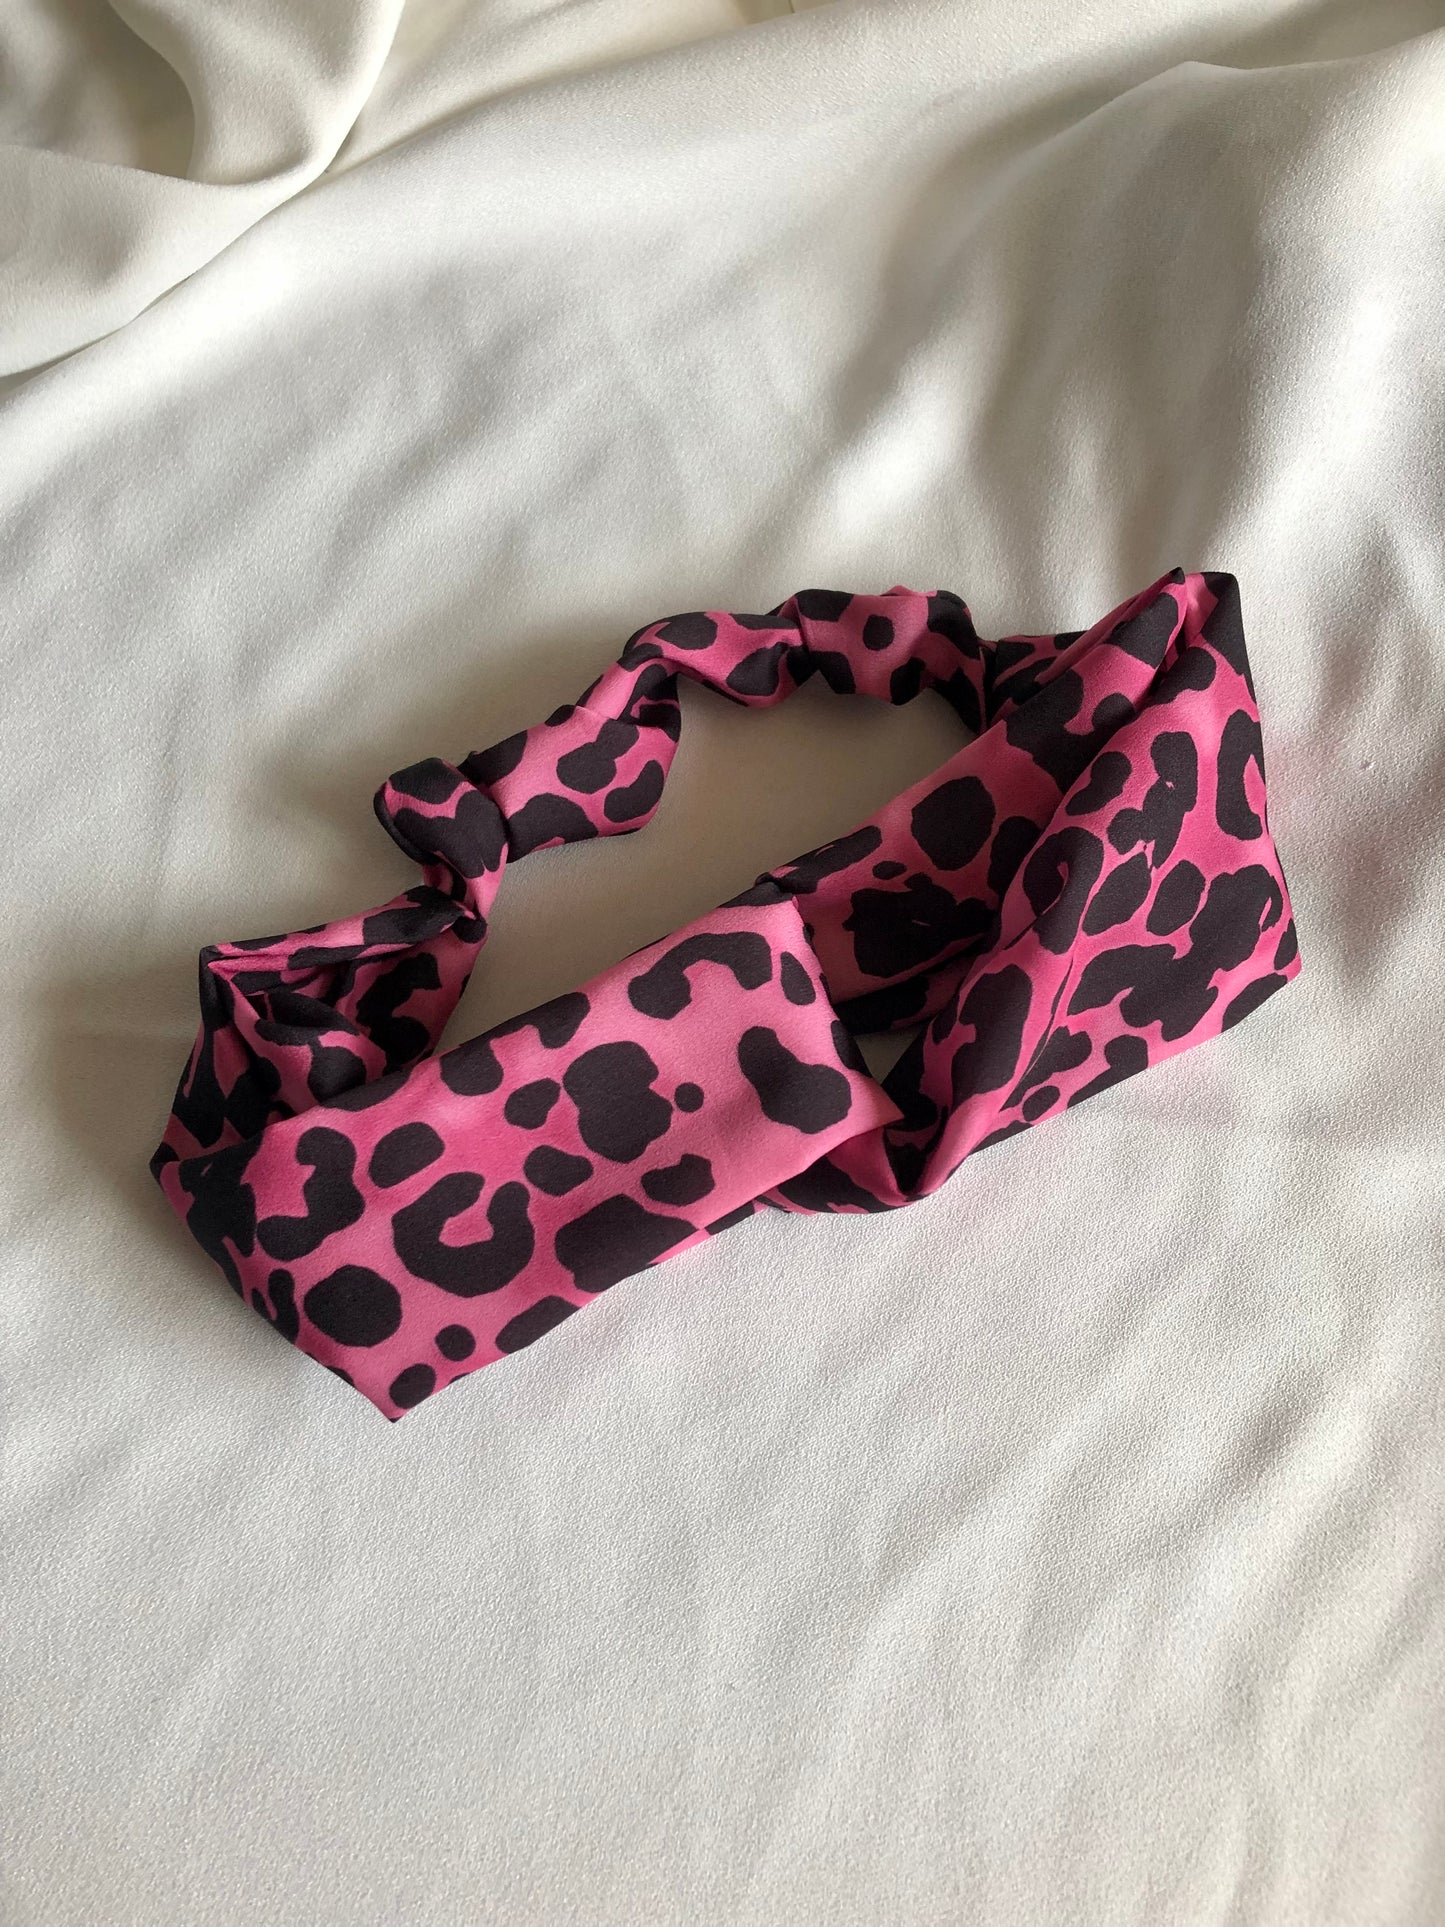 Pink Leopard Print Stretch Headband